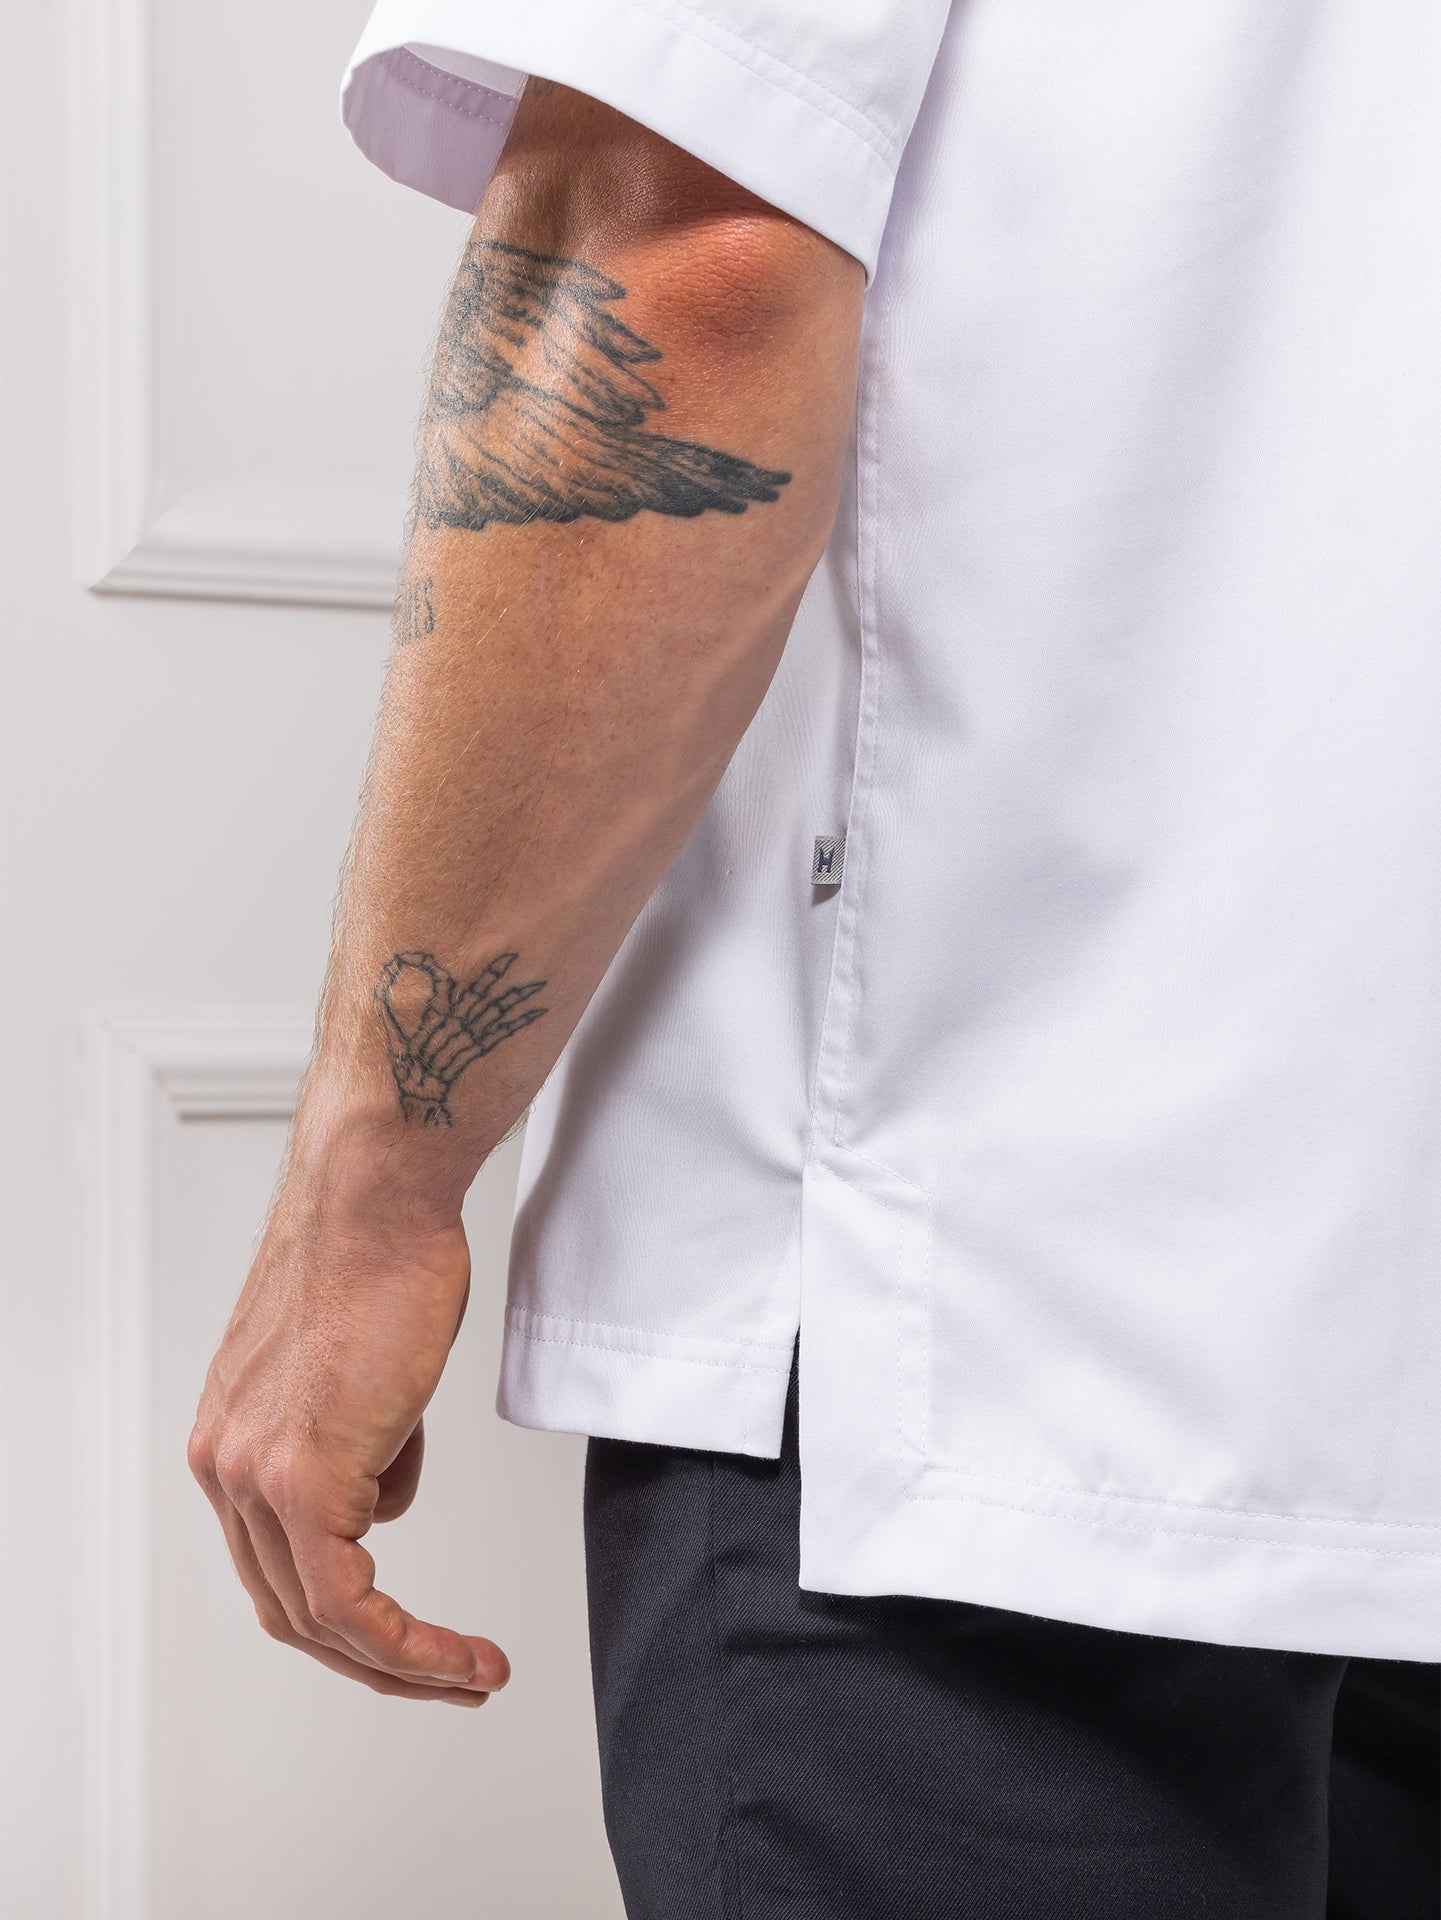 T-Shirt Gorgio White by Le Nouveau Chef -  ChefsCotton